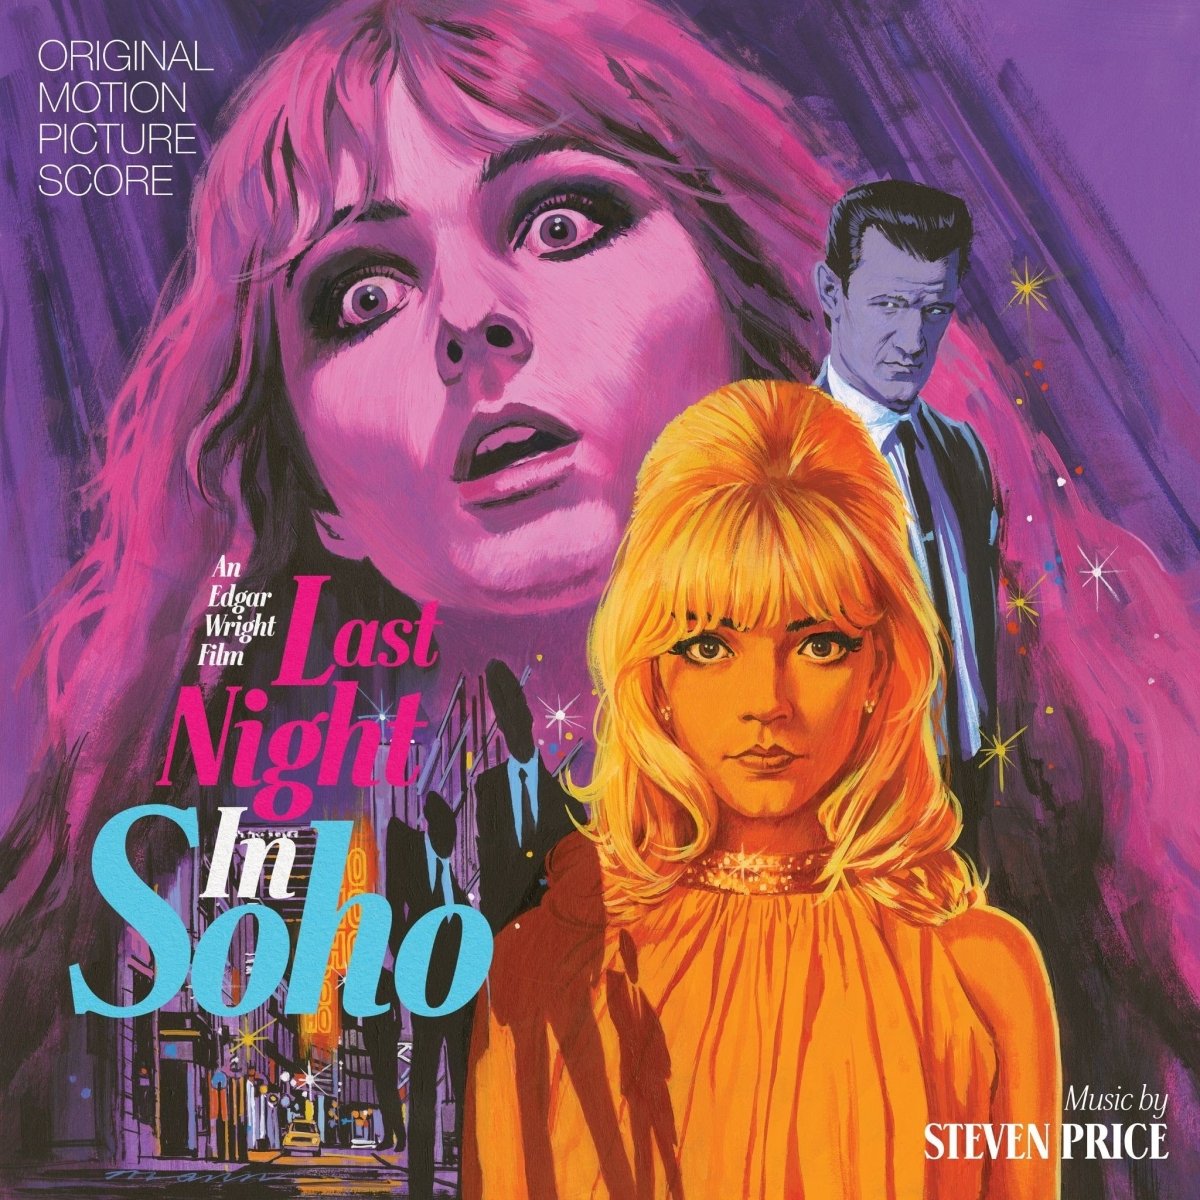 Last Night in Soho Score - Motion Picture Soundtrack - Audio - Exchange